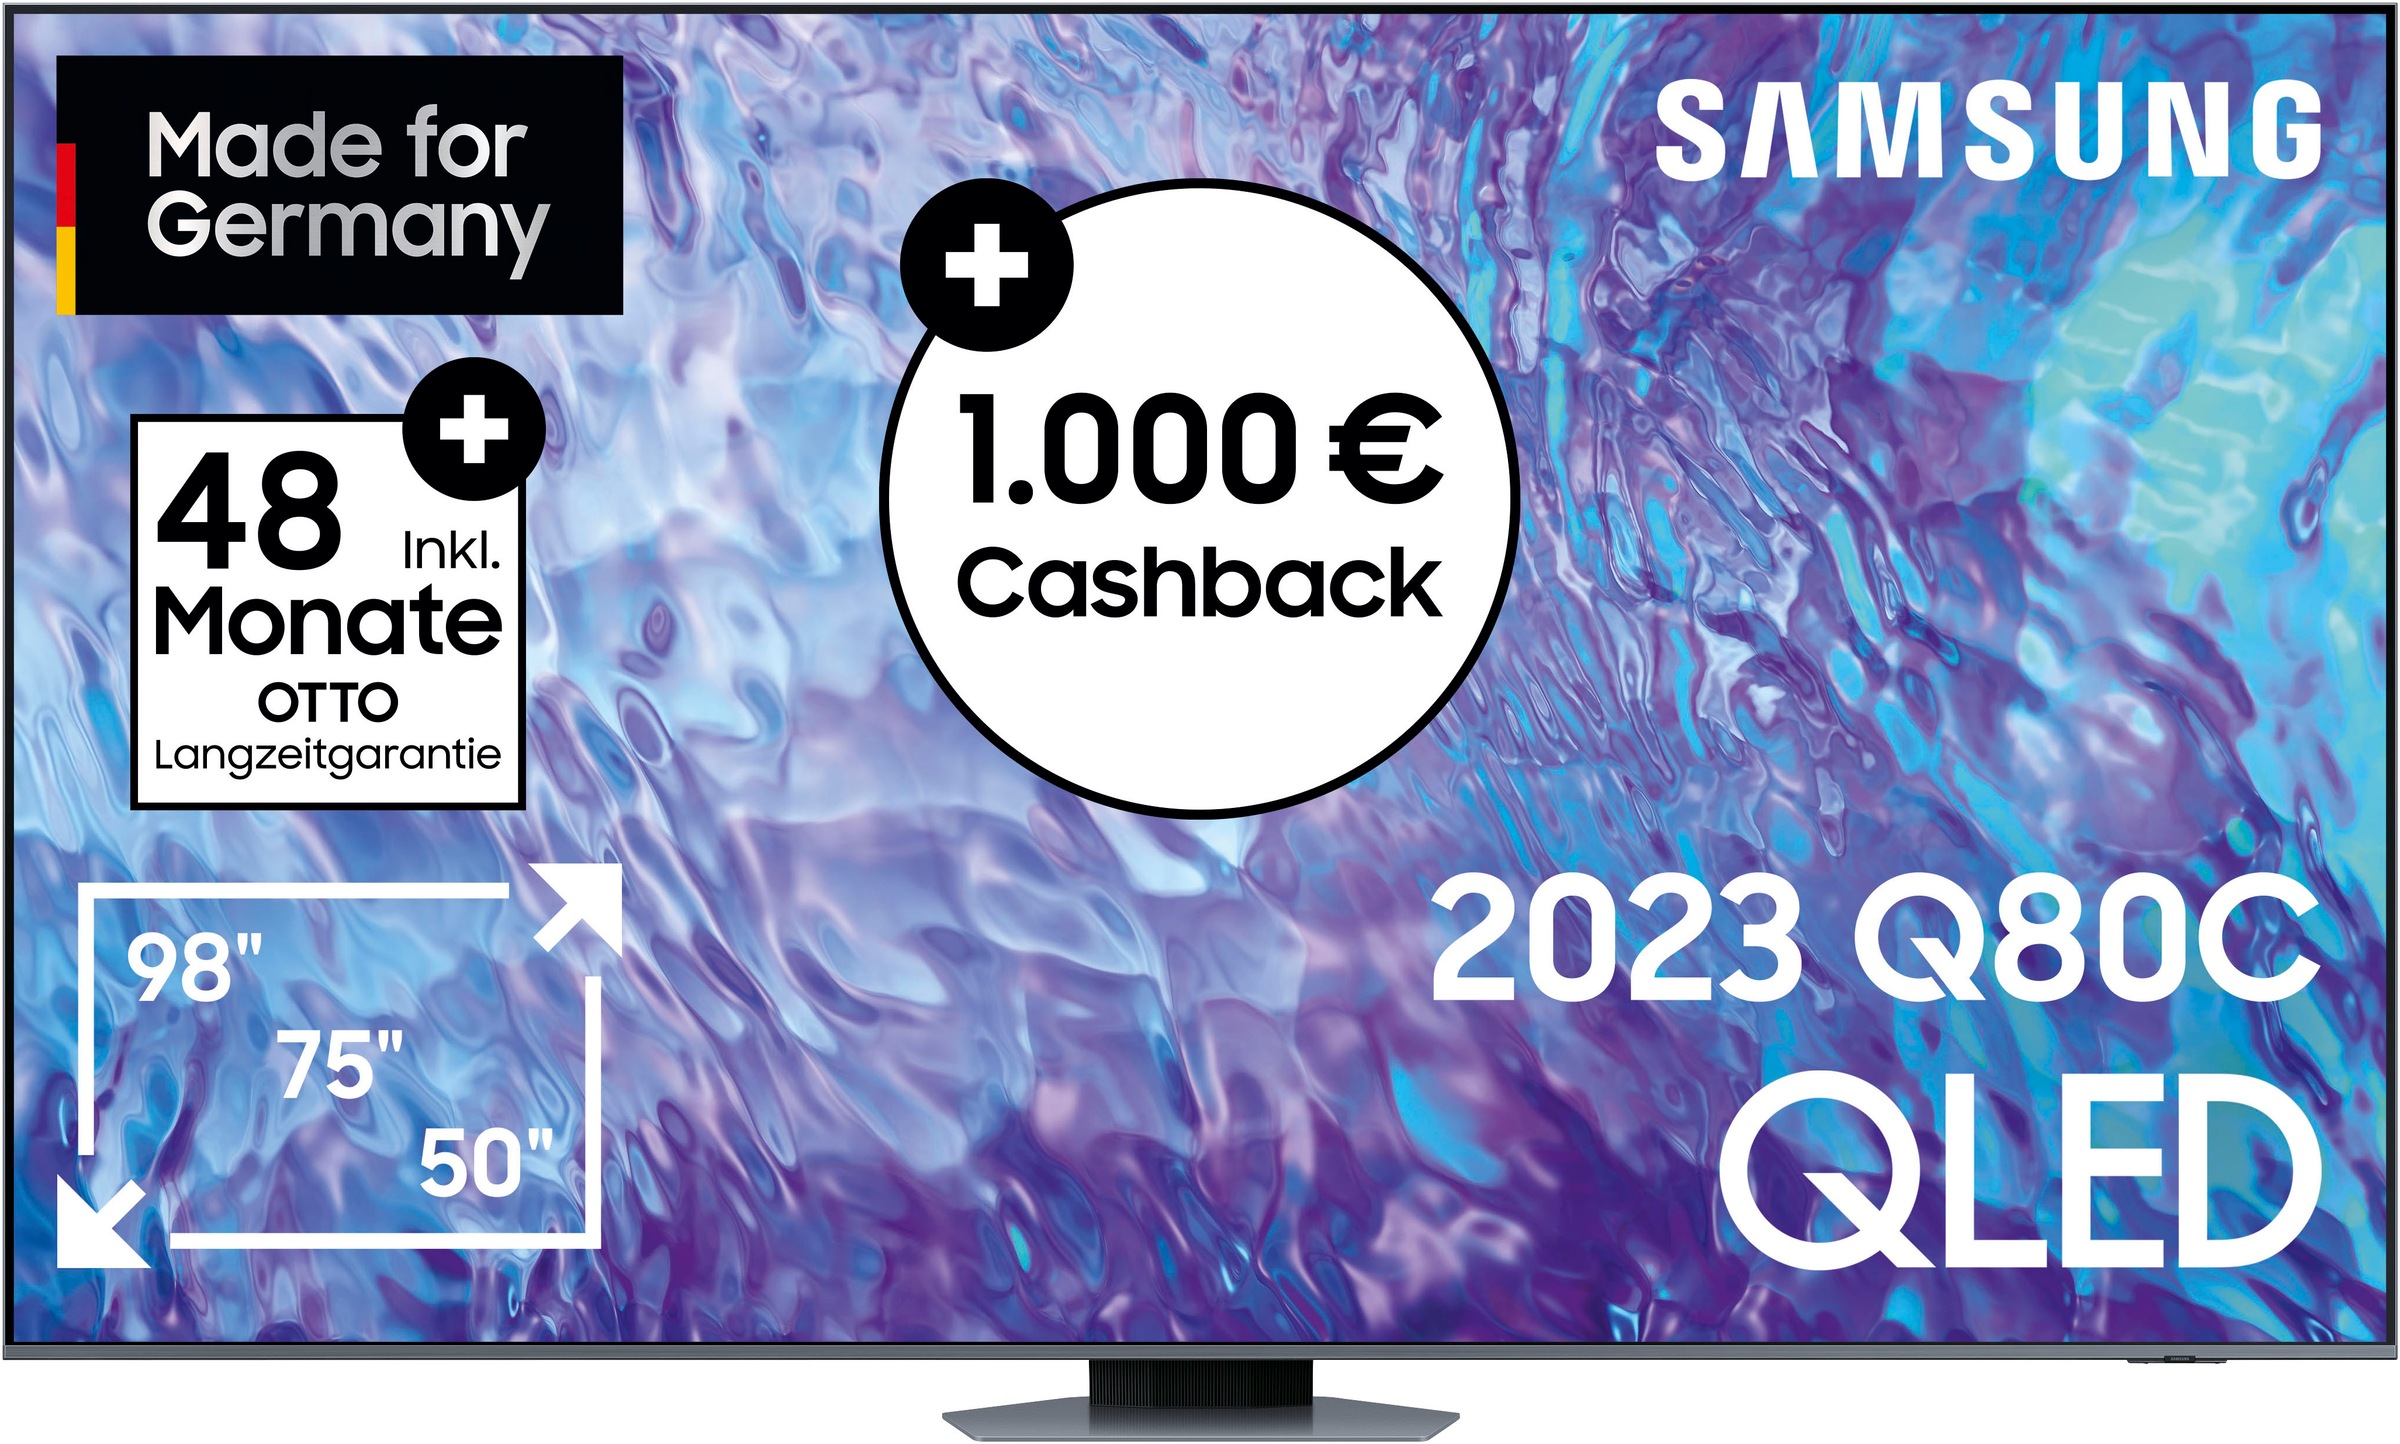 Samsung LED-Fernseher, 247 cm/98 Zoll, Smart-TV auf Rechnung bestellen